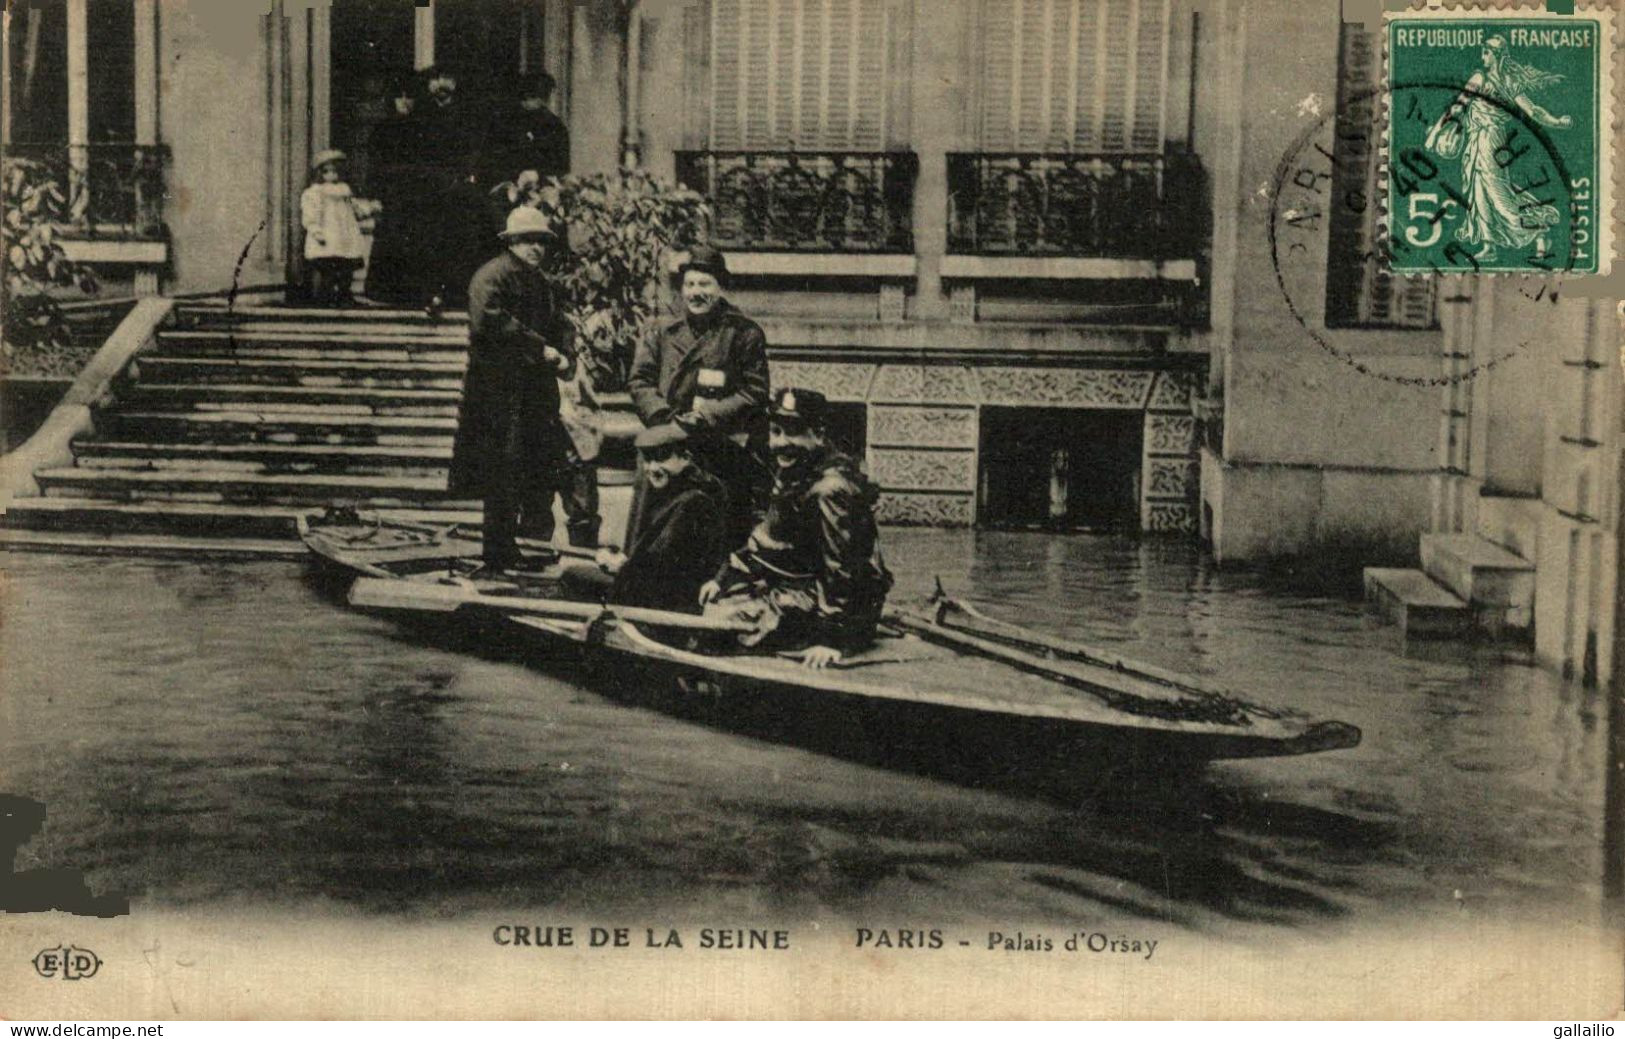 PARIS CRUE DE LA SEINE PALAIS D'ORSAY - Paris Flood, 1910